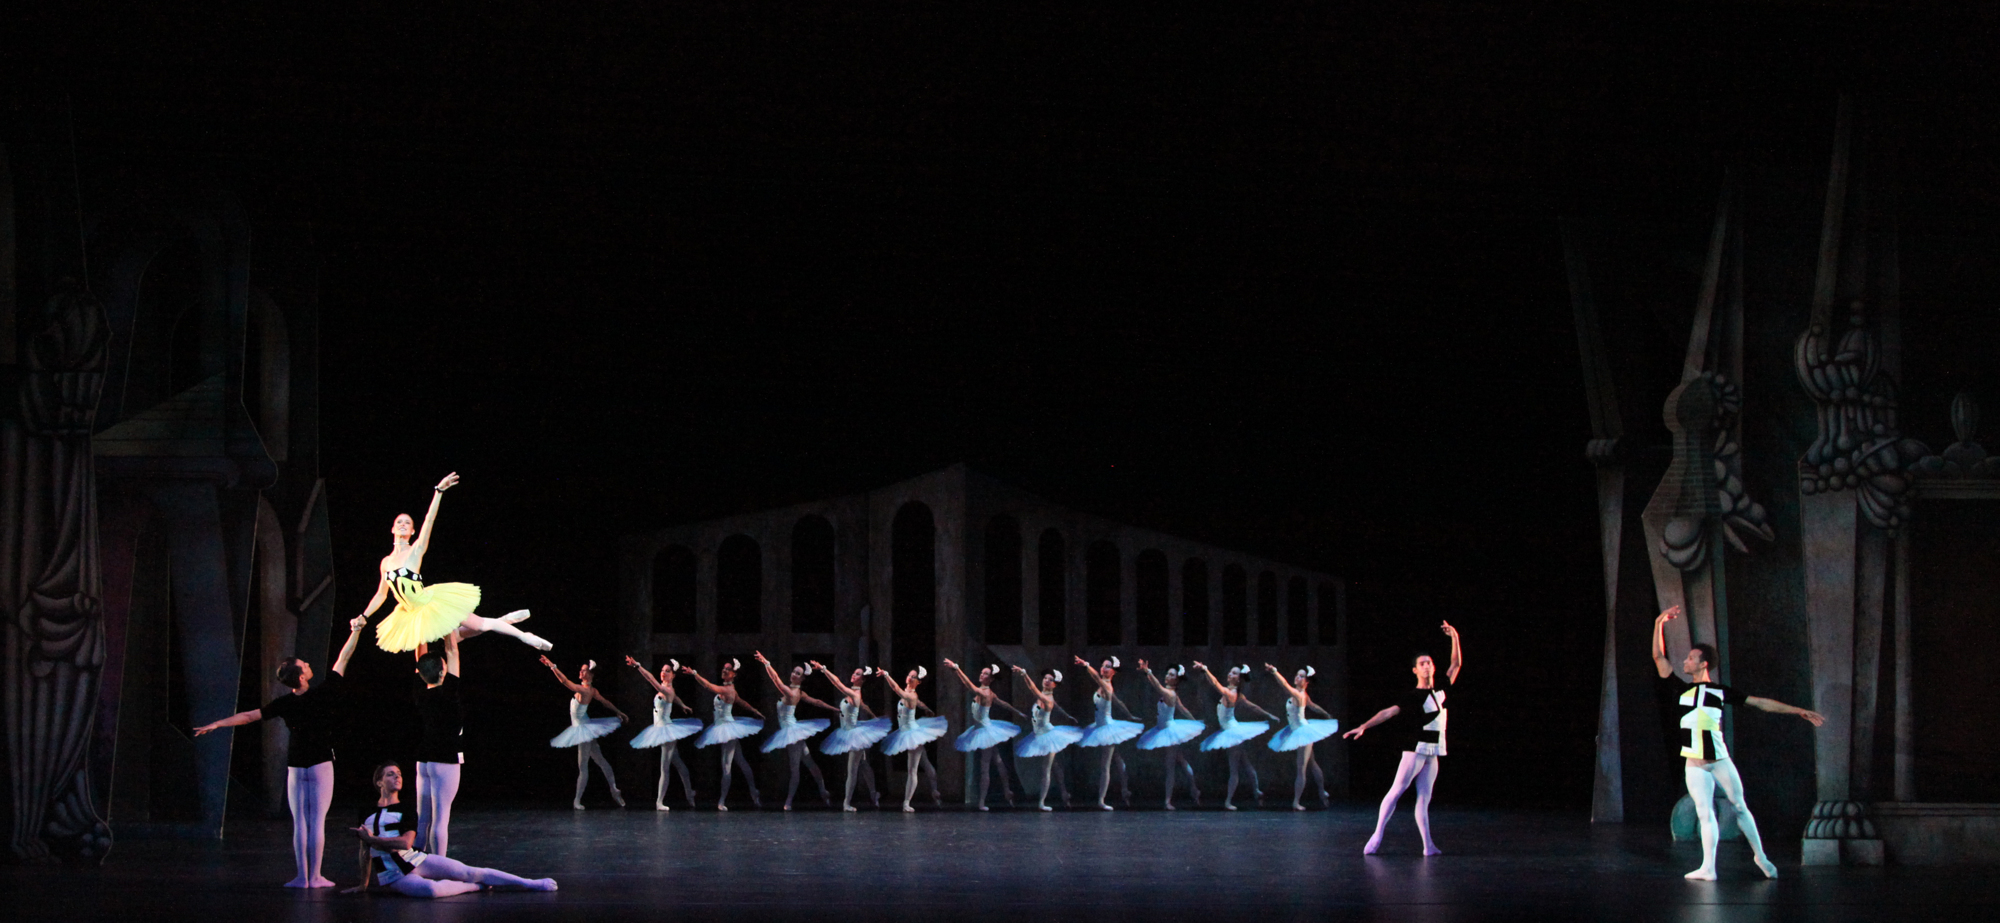 The Sarasota Ballet in Sir Frederick Ashton's 